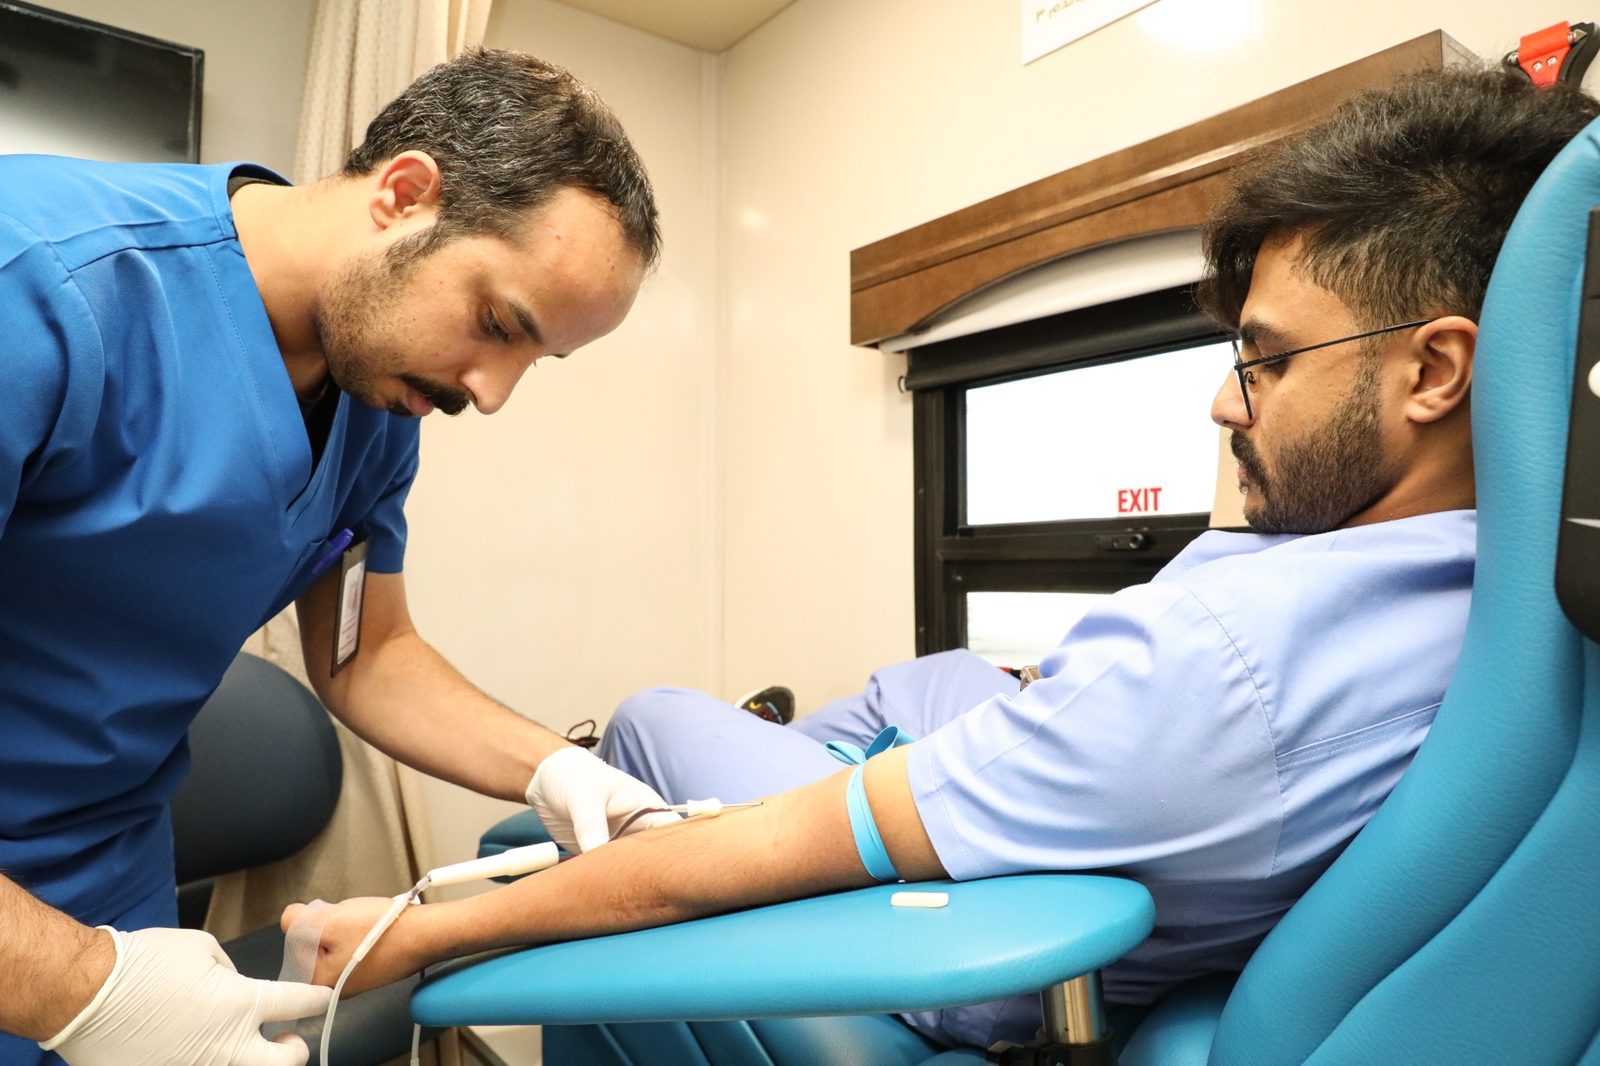 جامعة بيشة تُنفّذ بالتعاون مع مستشفى الملك عبدالله حملة للتبرع بالدم على مدى أربعة أيام